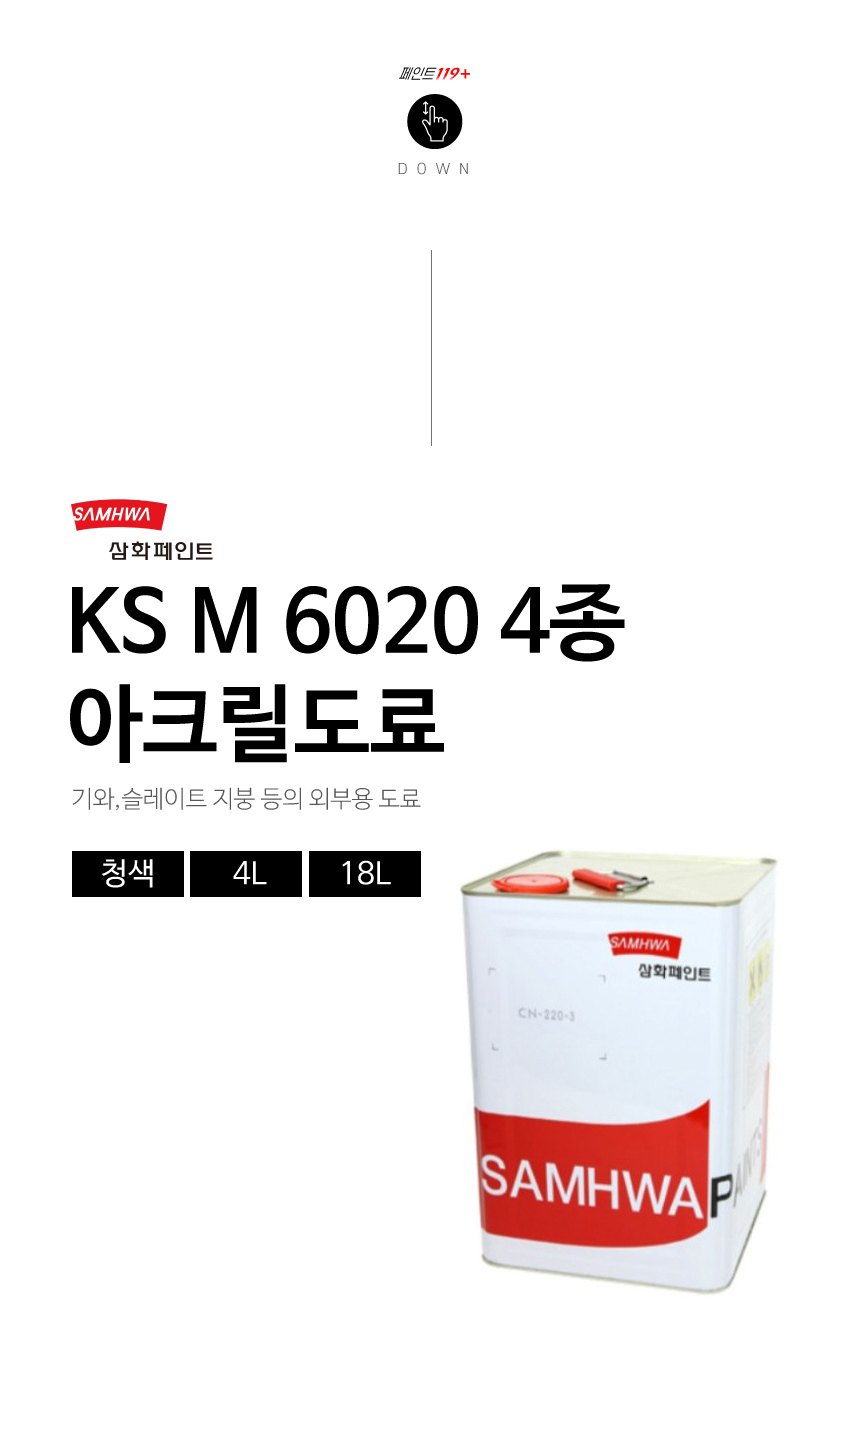 삼화 KSM6020 4종 메인 소개이미지